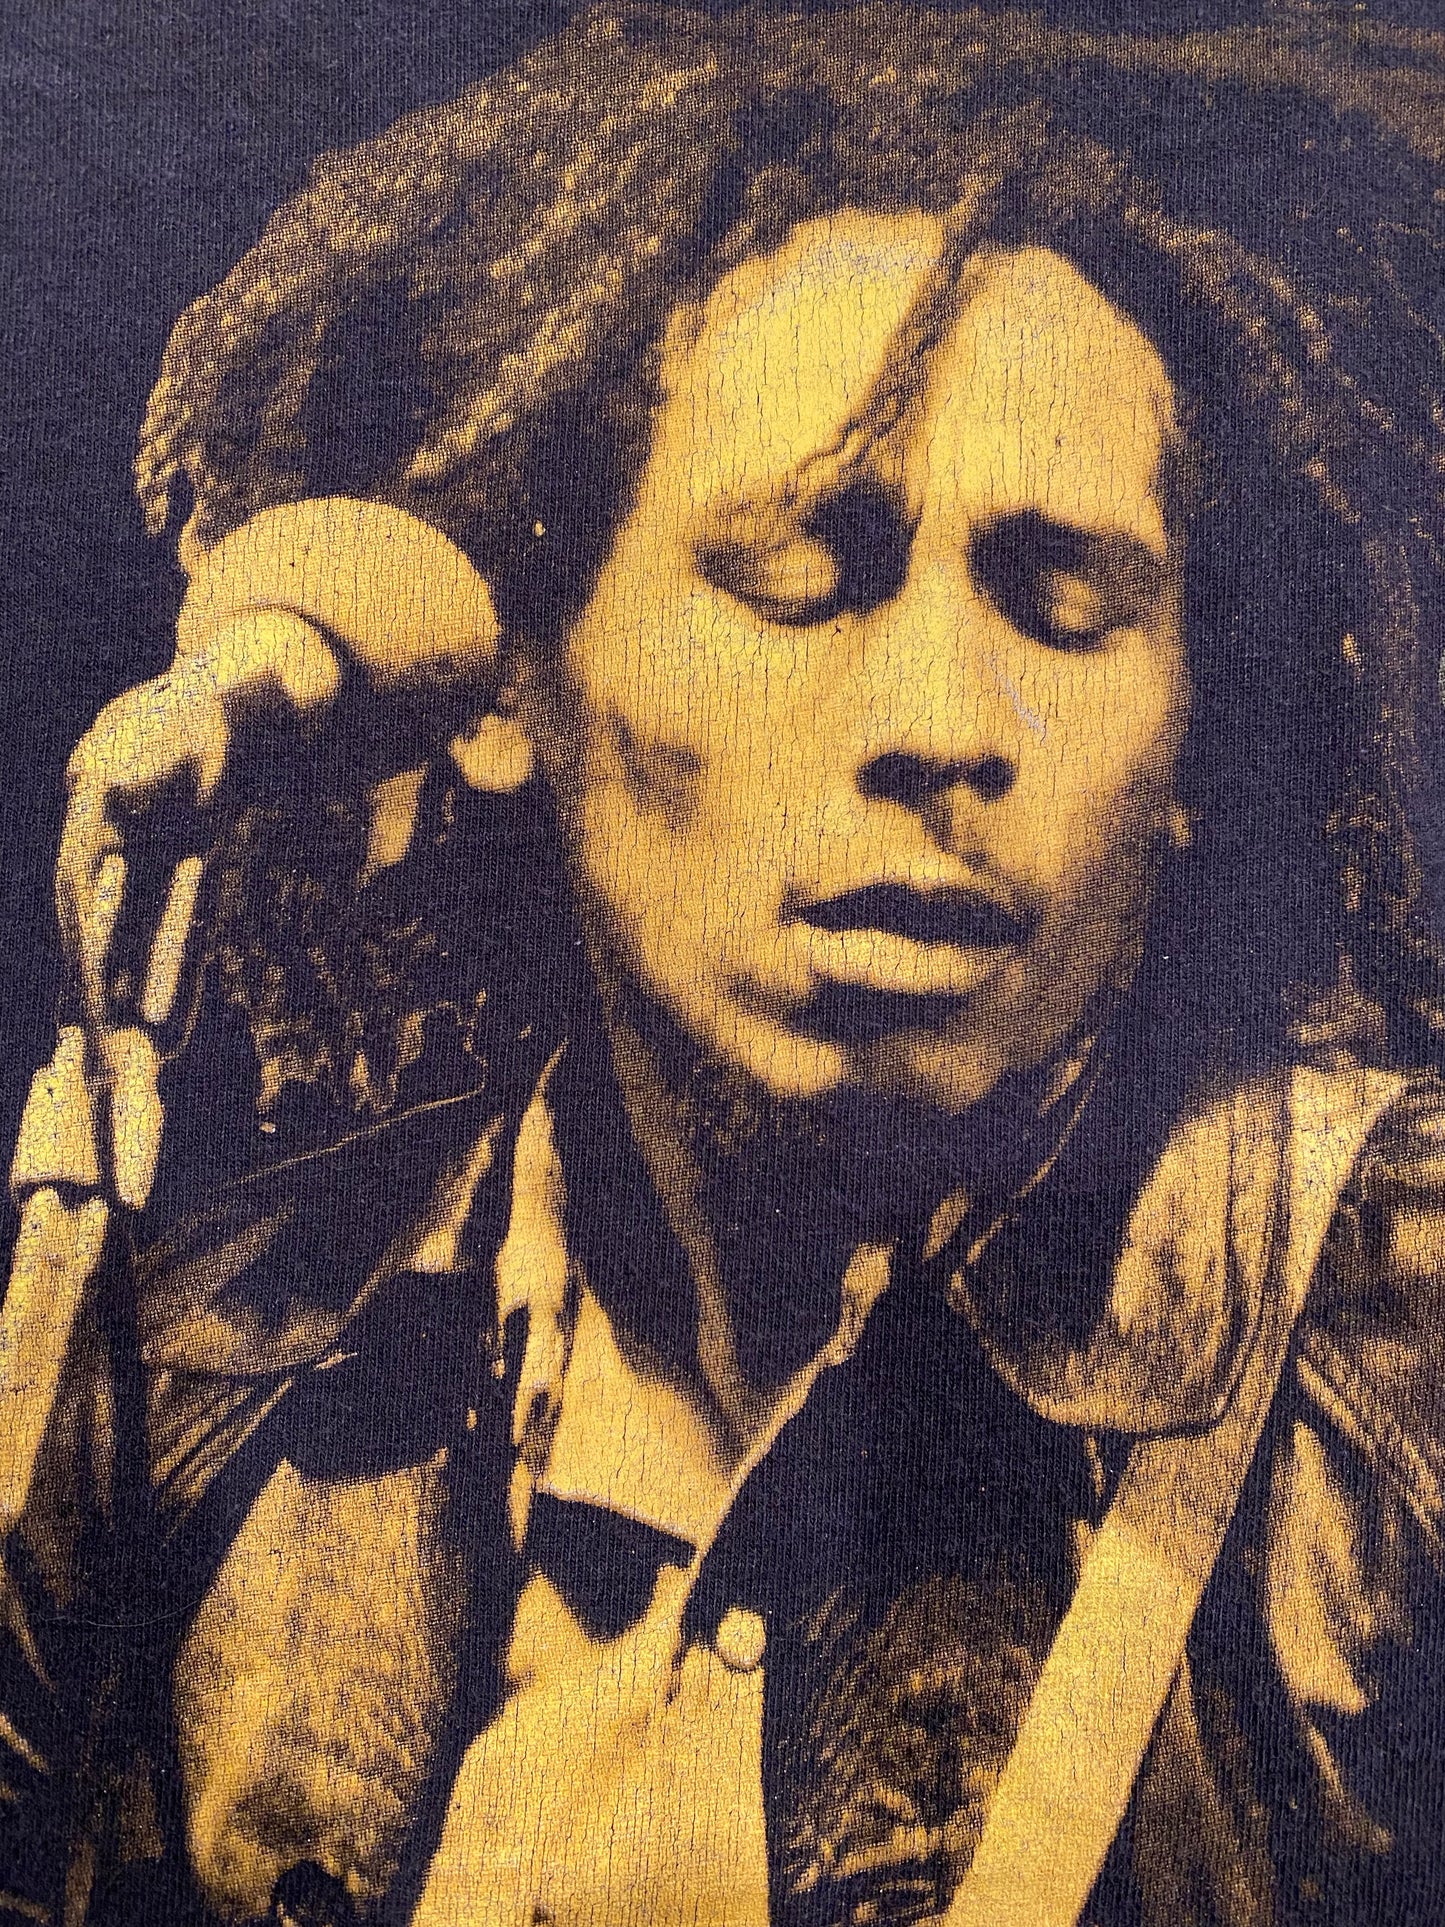 Distressed Bob Marley Tee